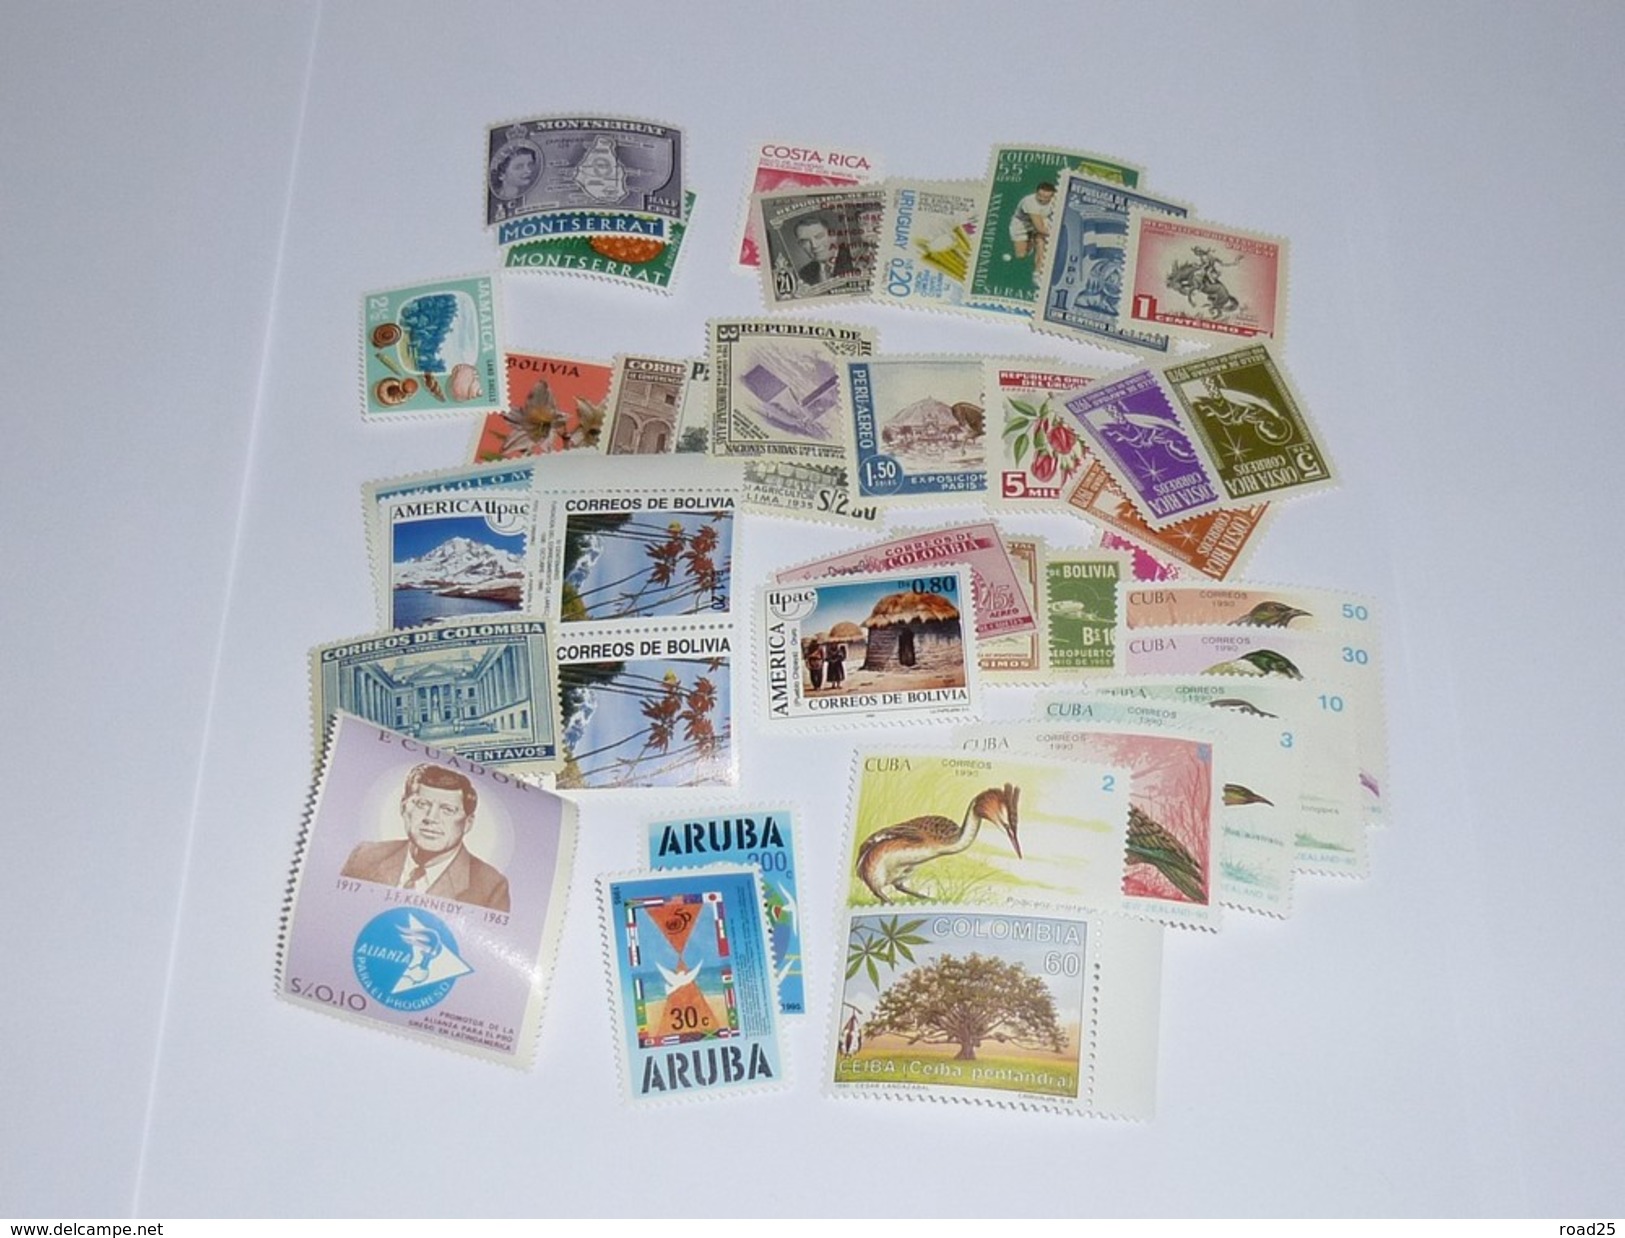 Amérique : stock de timbres neufs sans charnière sous pochettes , tout pays dont Etats-Unis Mexique Brésil Falkland etc